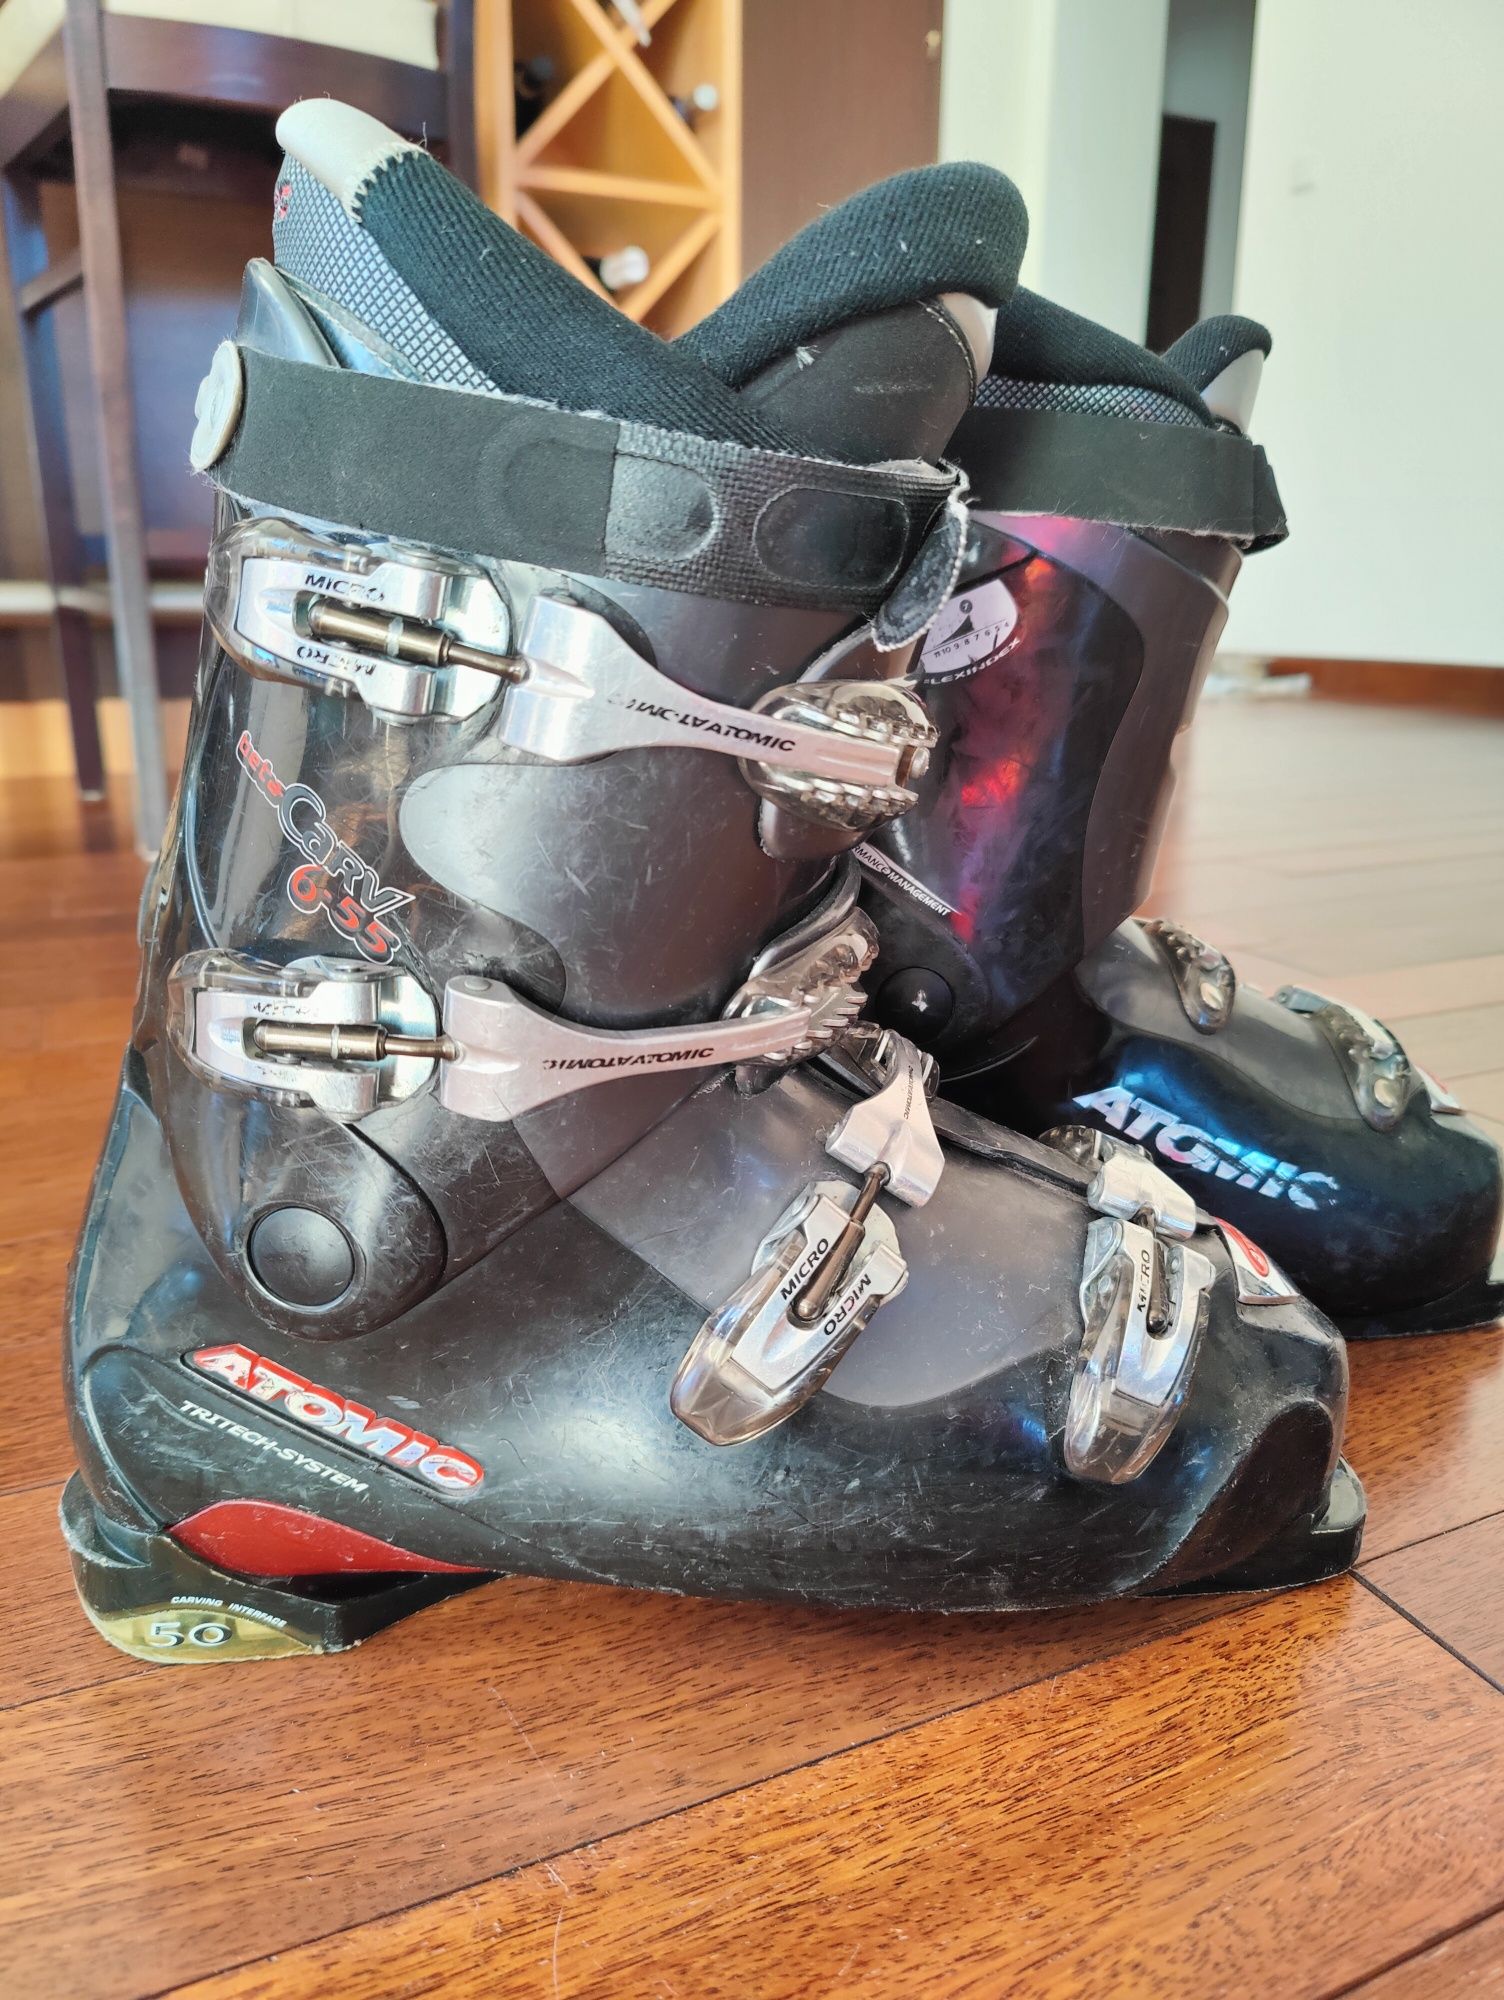 Buty narciarskie Atomic BetaCarv 6.55 używane, rozmiar 30.